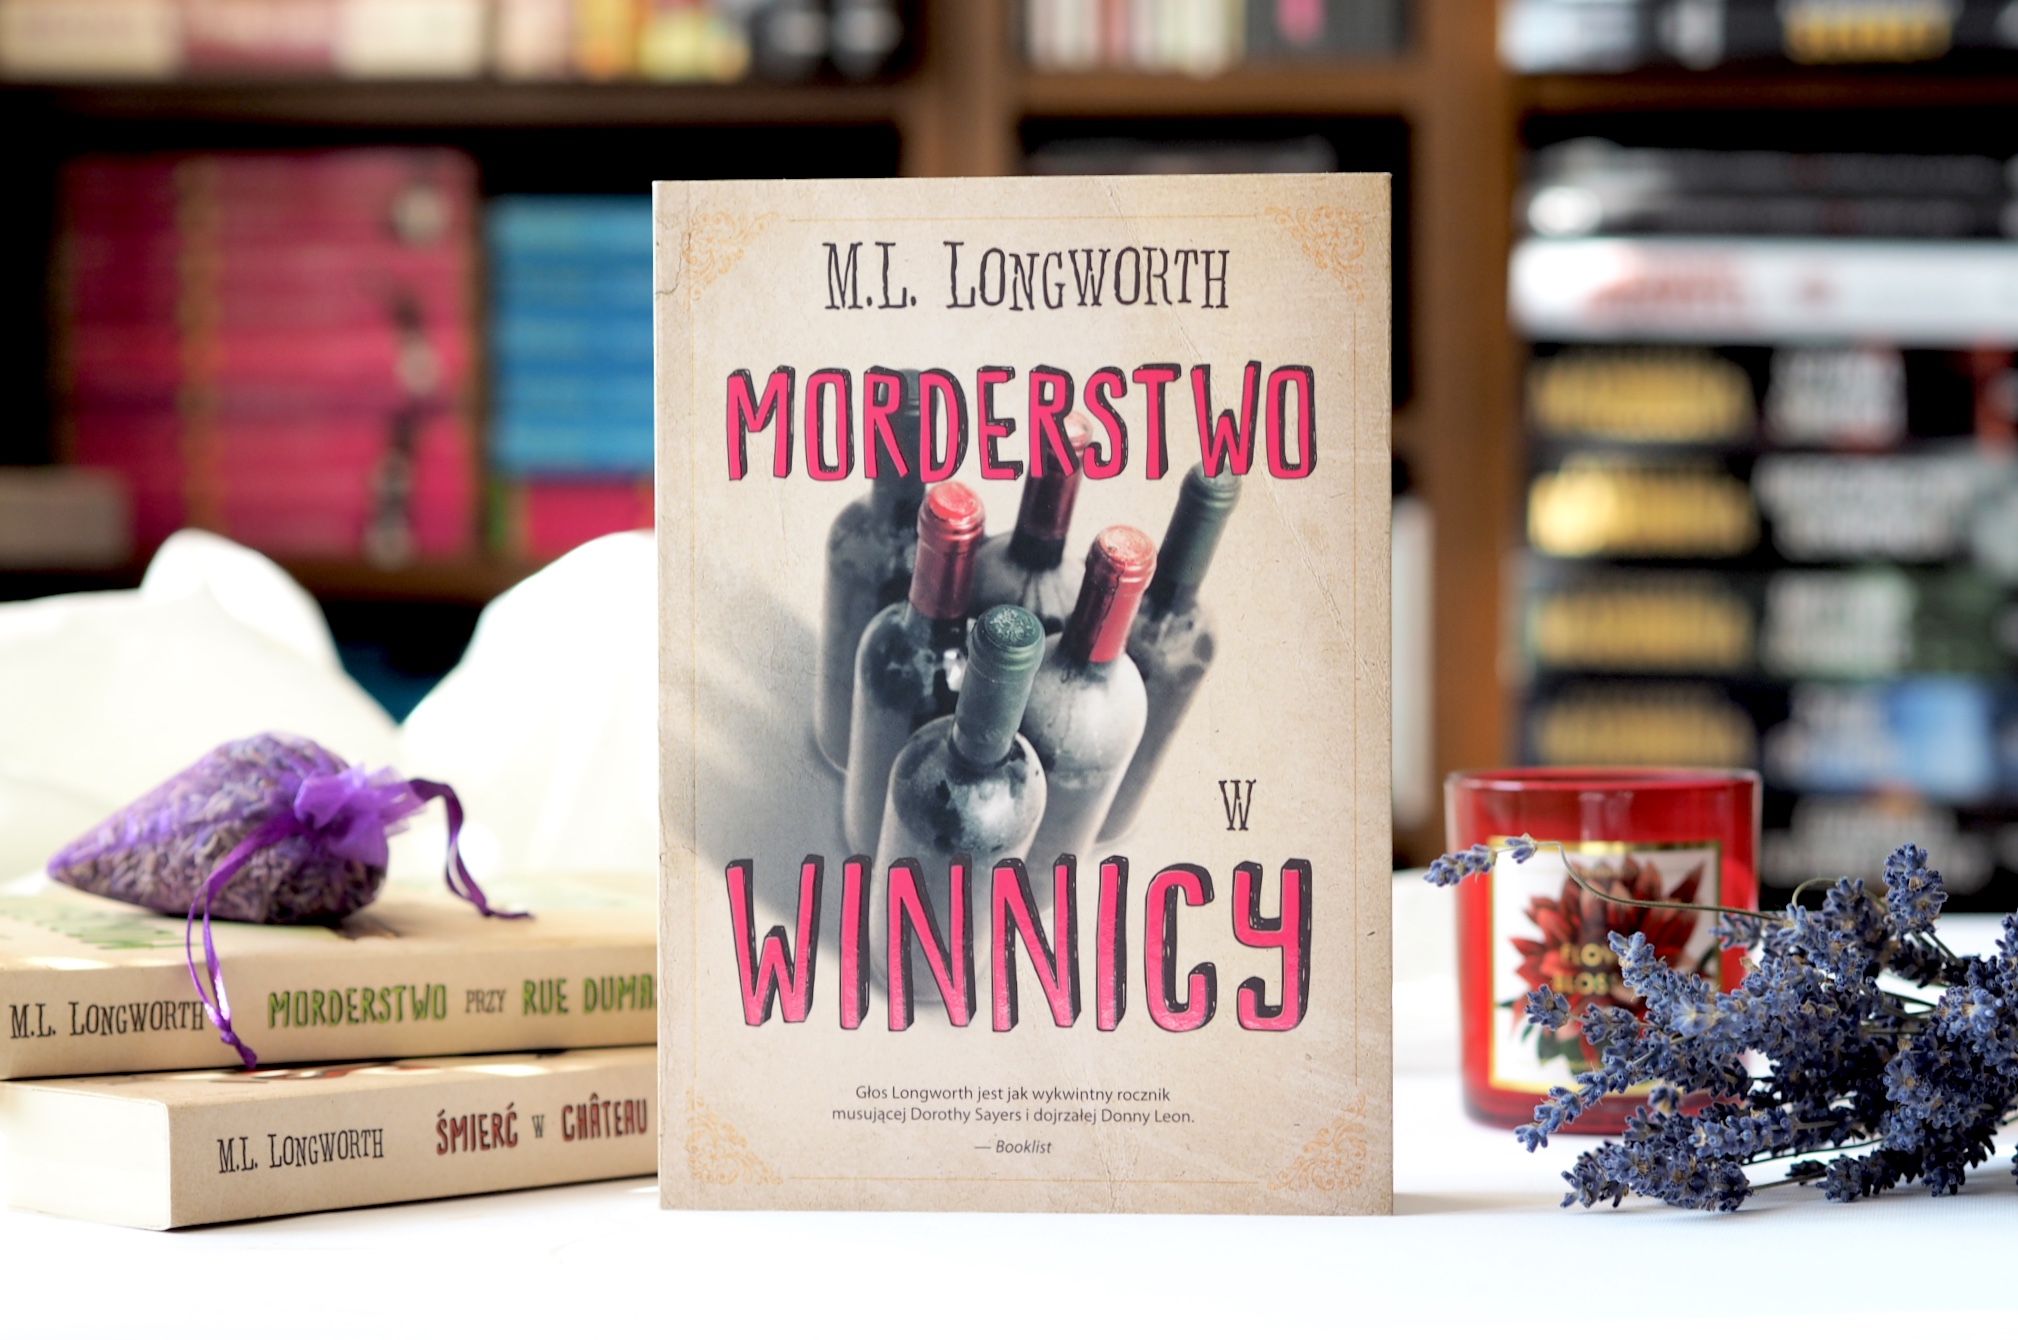 M.L. Longworth "Morderstwo w winnicy"